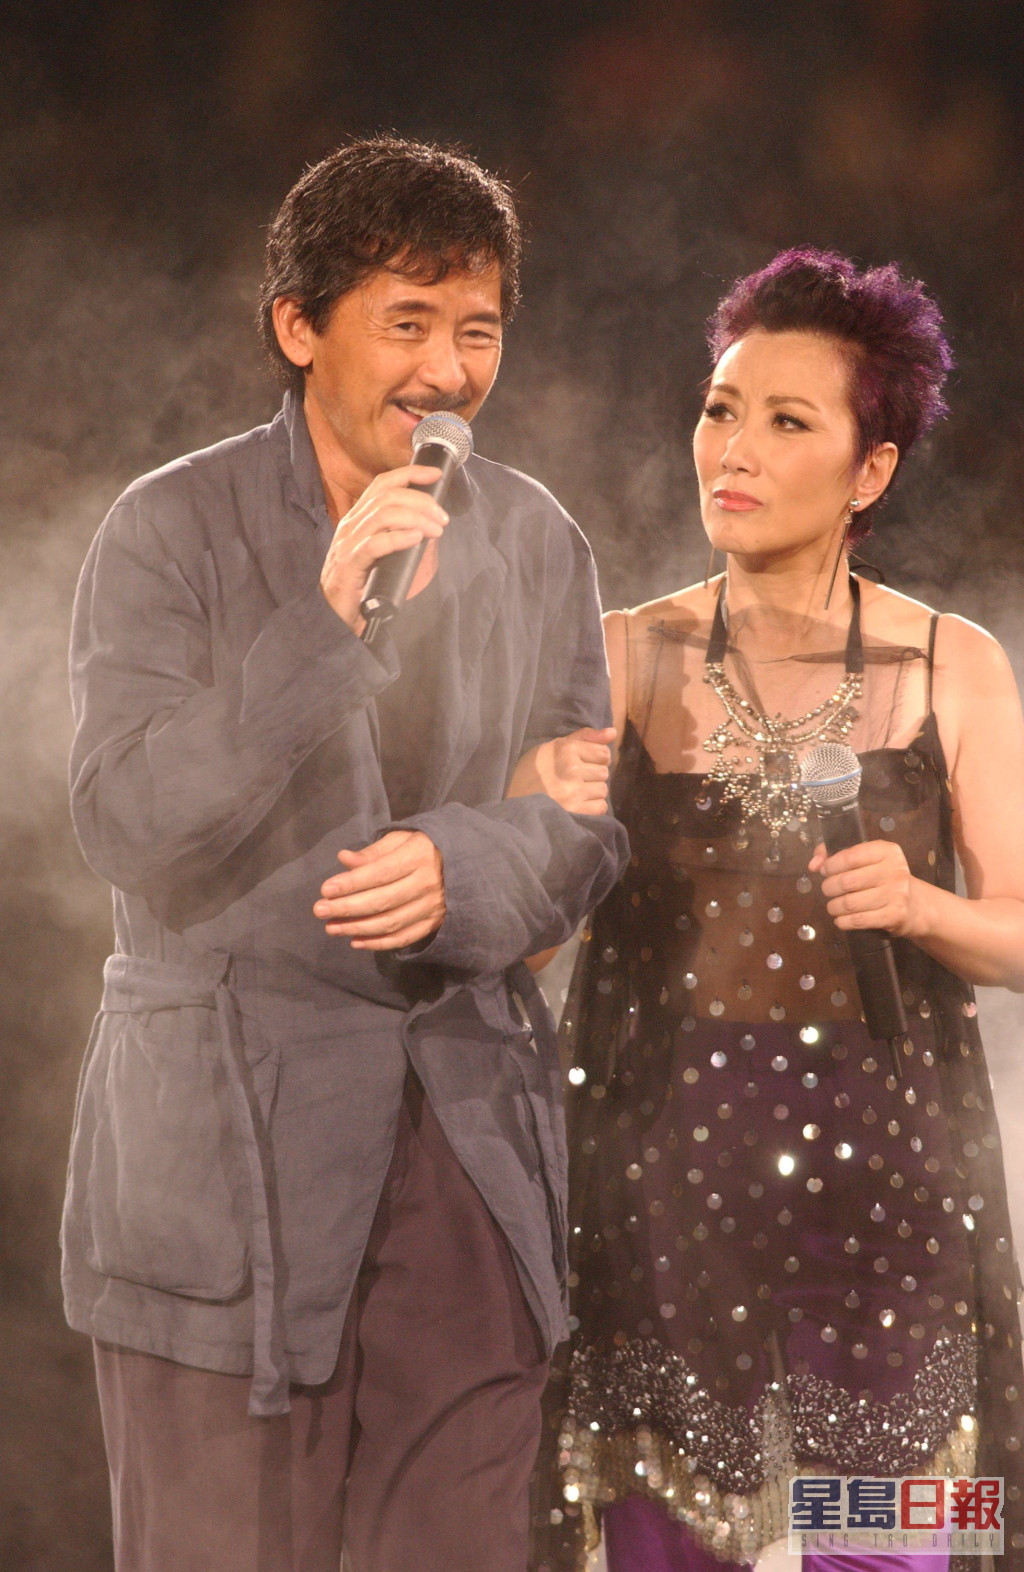 阿Lam为汪明荃演唱会做嘉宾出事。